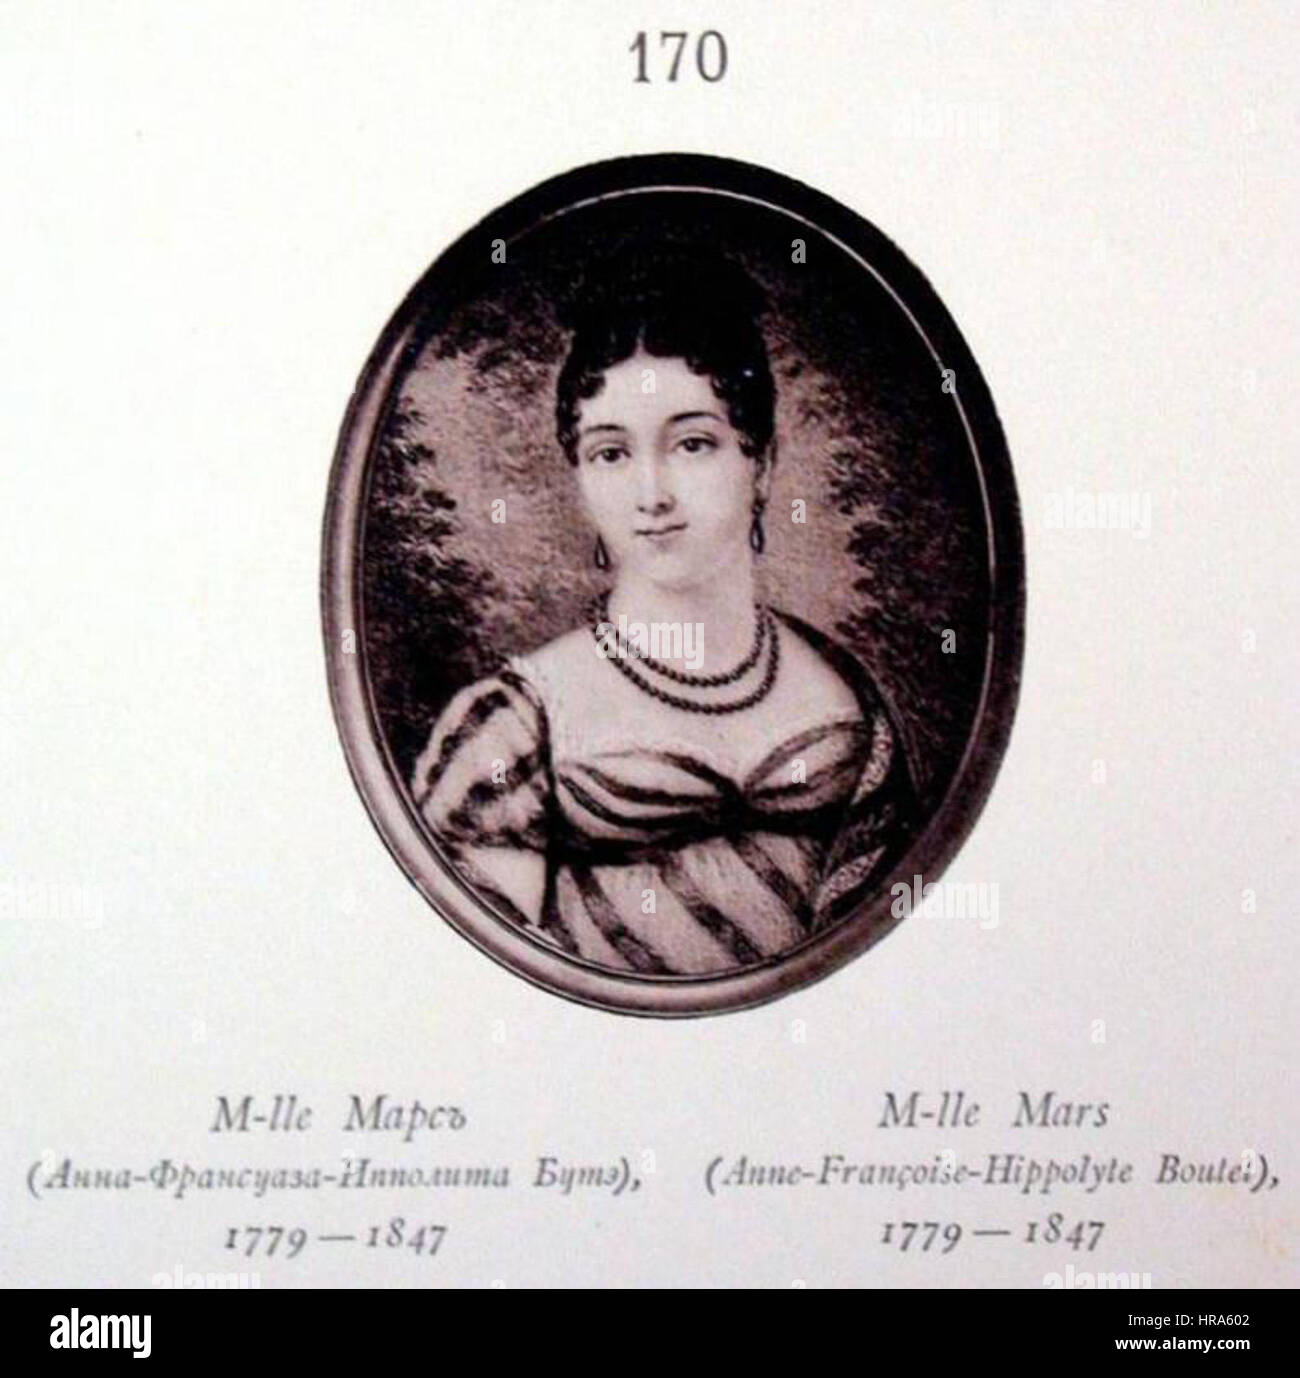 RusPortraits v4-170 M-lle Mars (Anna Frantsuaza Ippolita Bute) 1779-1847 Stock Photo